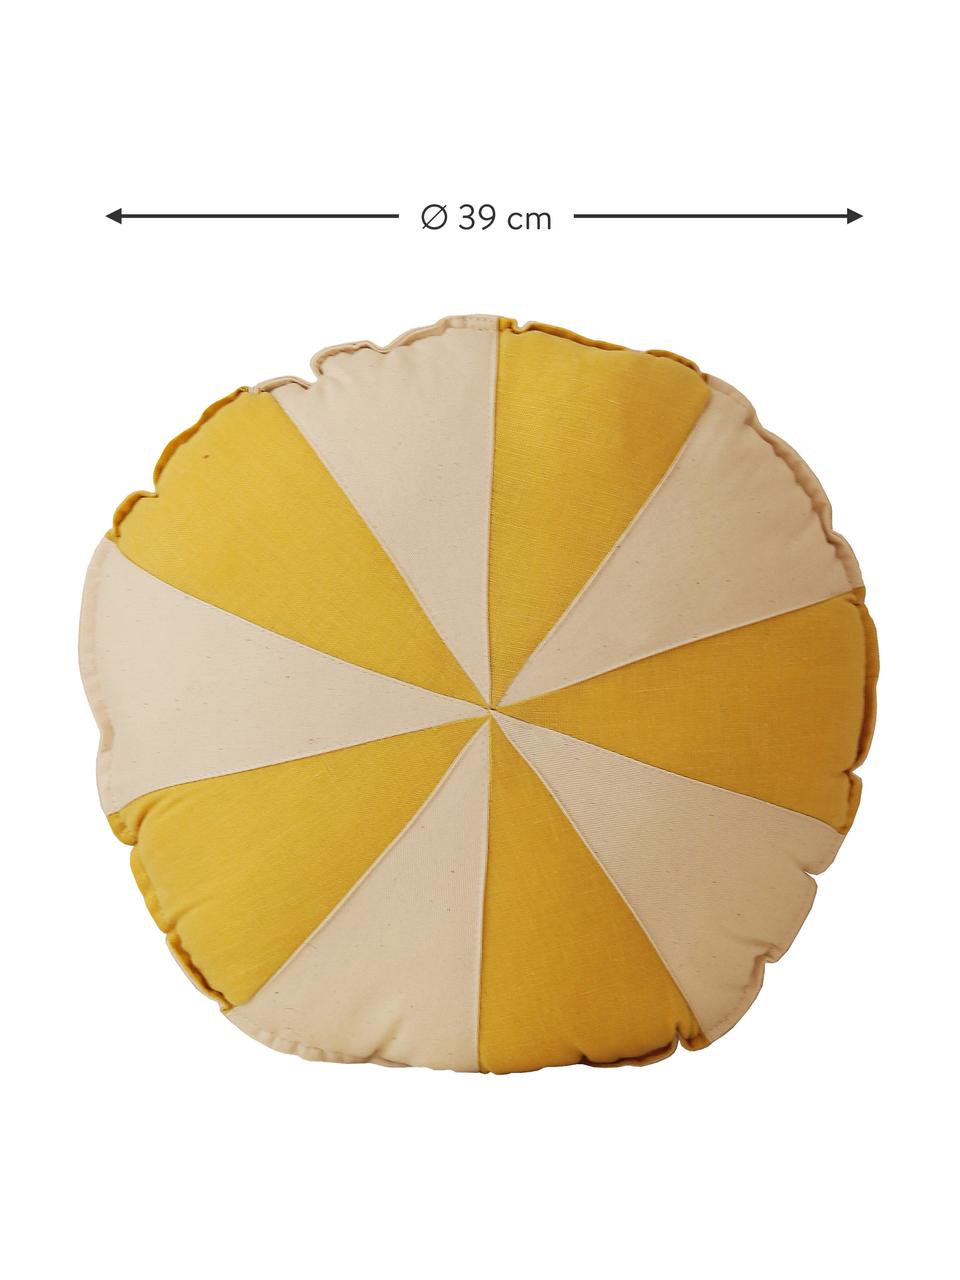 Patchworkový lněný polštář Circus, Krémově bílá, žlutá, Ø 39 cm, V 10 cm